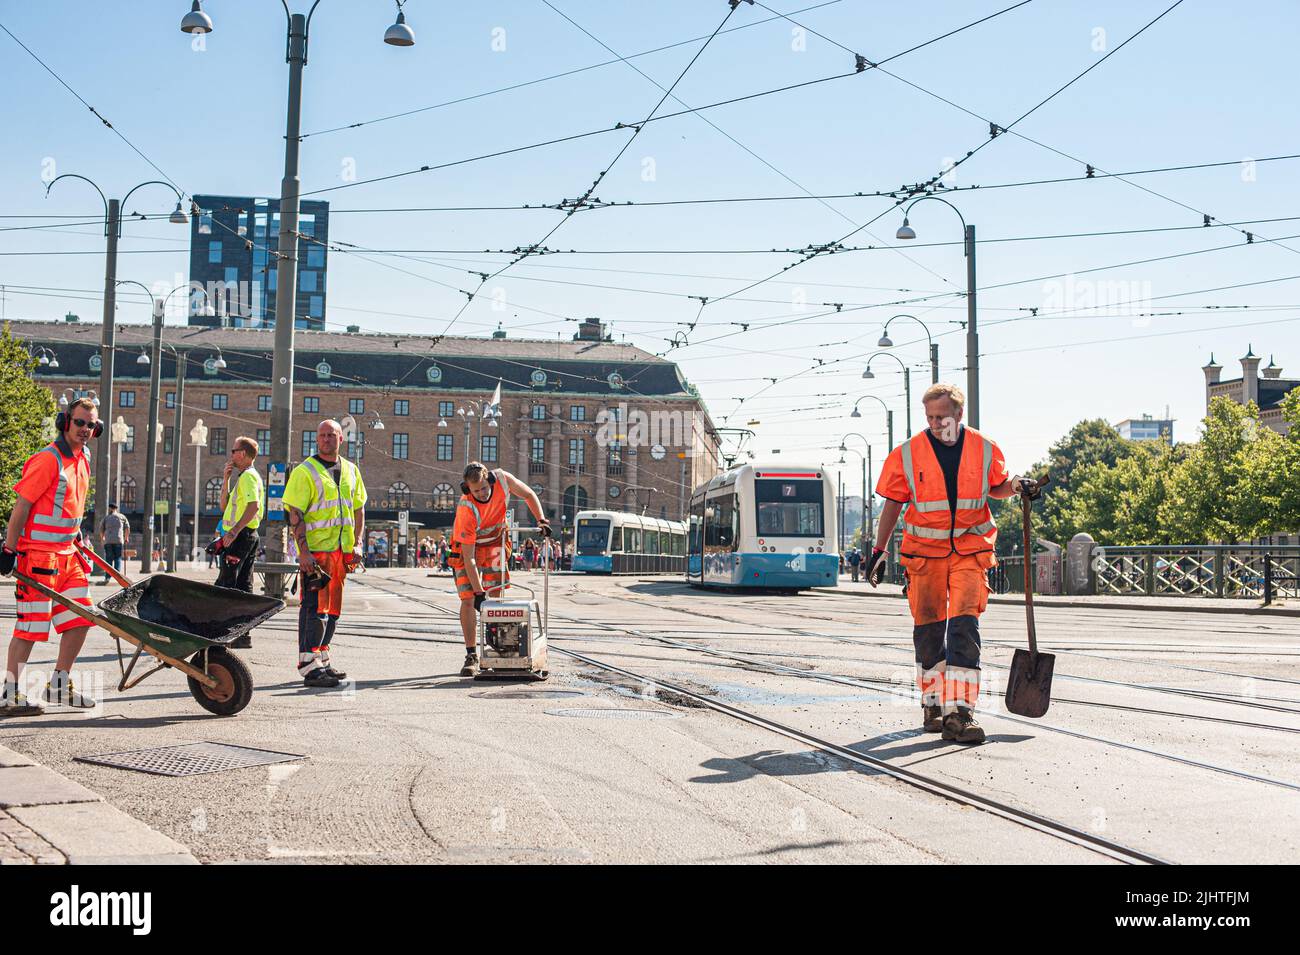 Göteborg, Suède - 25 juillet 2012: Des hommes travaillent à réparer des voies de tramway à Drottningtorget. Banque D'Images